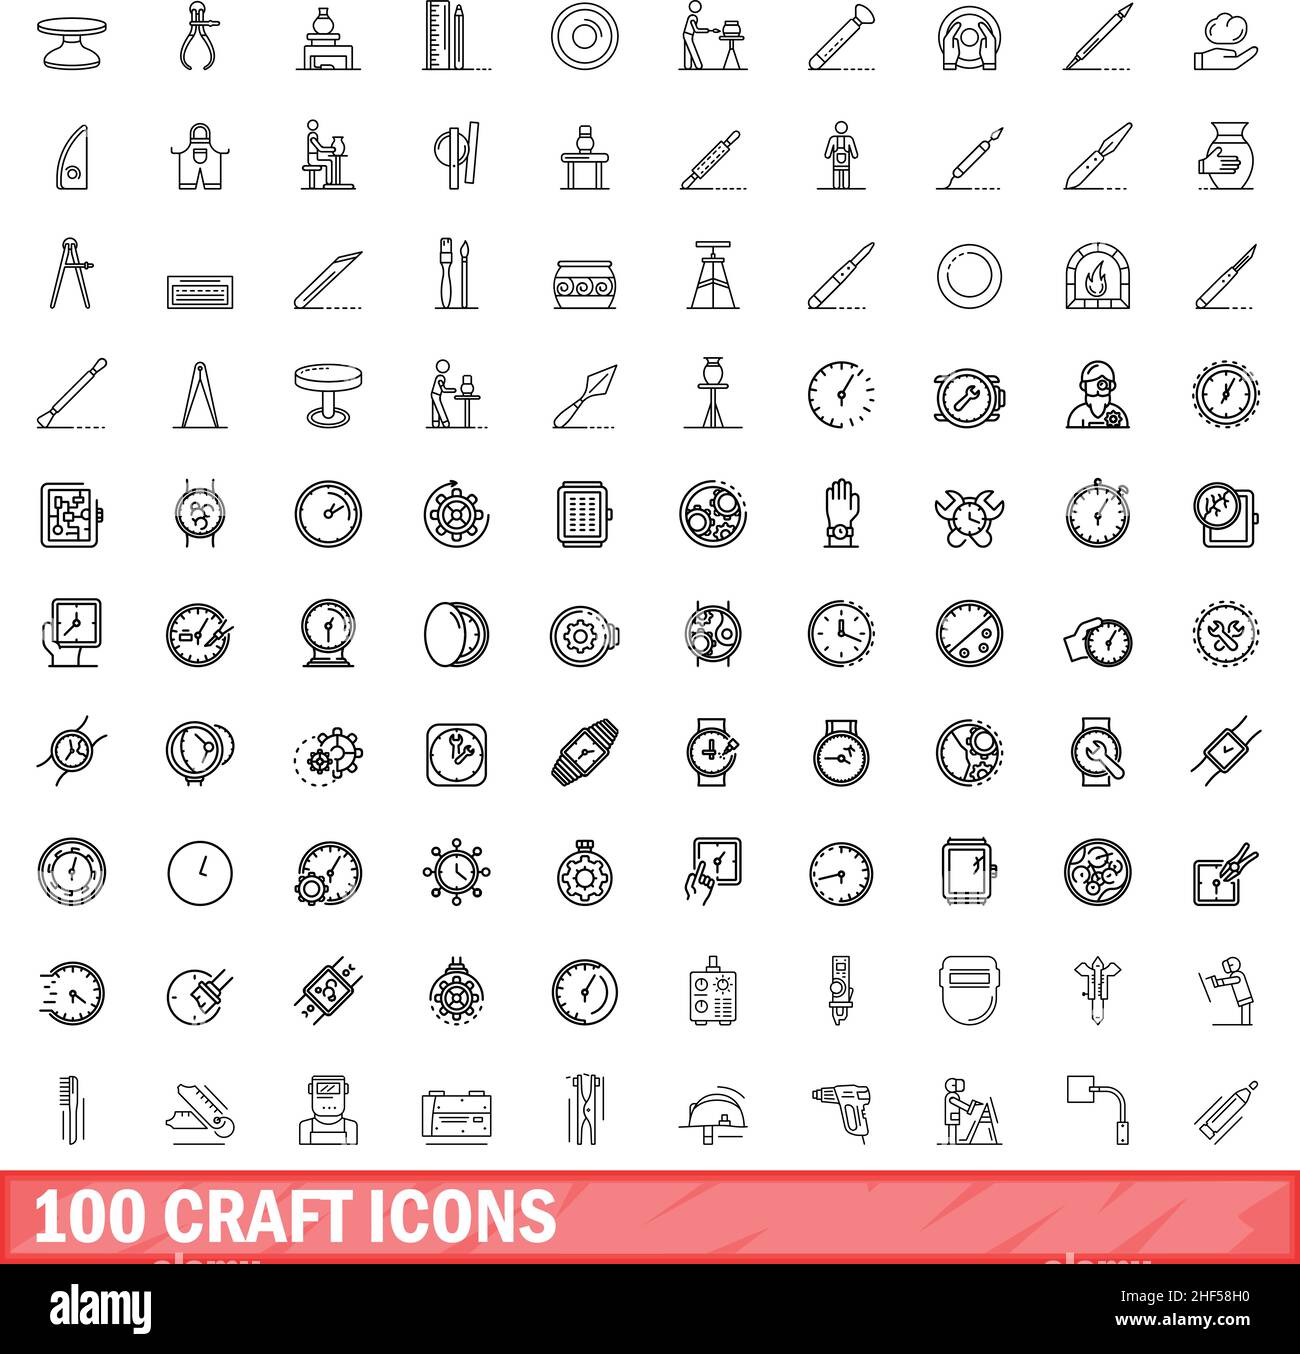 100 Bastelsymbole eingestellt. Umreißen Abbildung von 100 Handwerk Symbole Vektor-Set isoliert auf weißem Hintergrund Stock Vektor